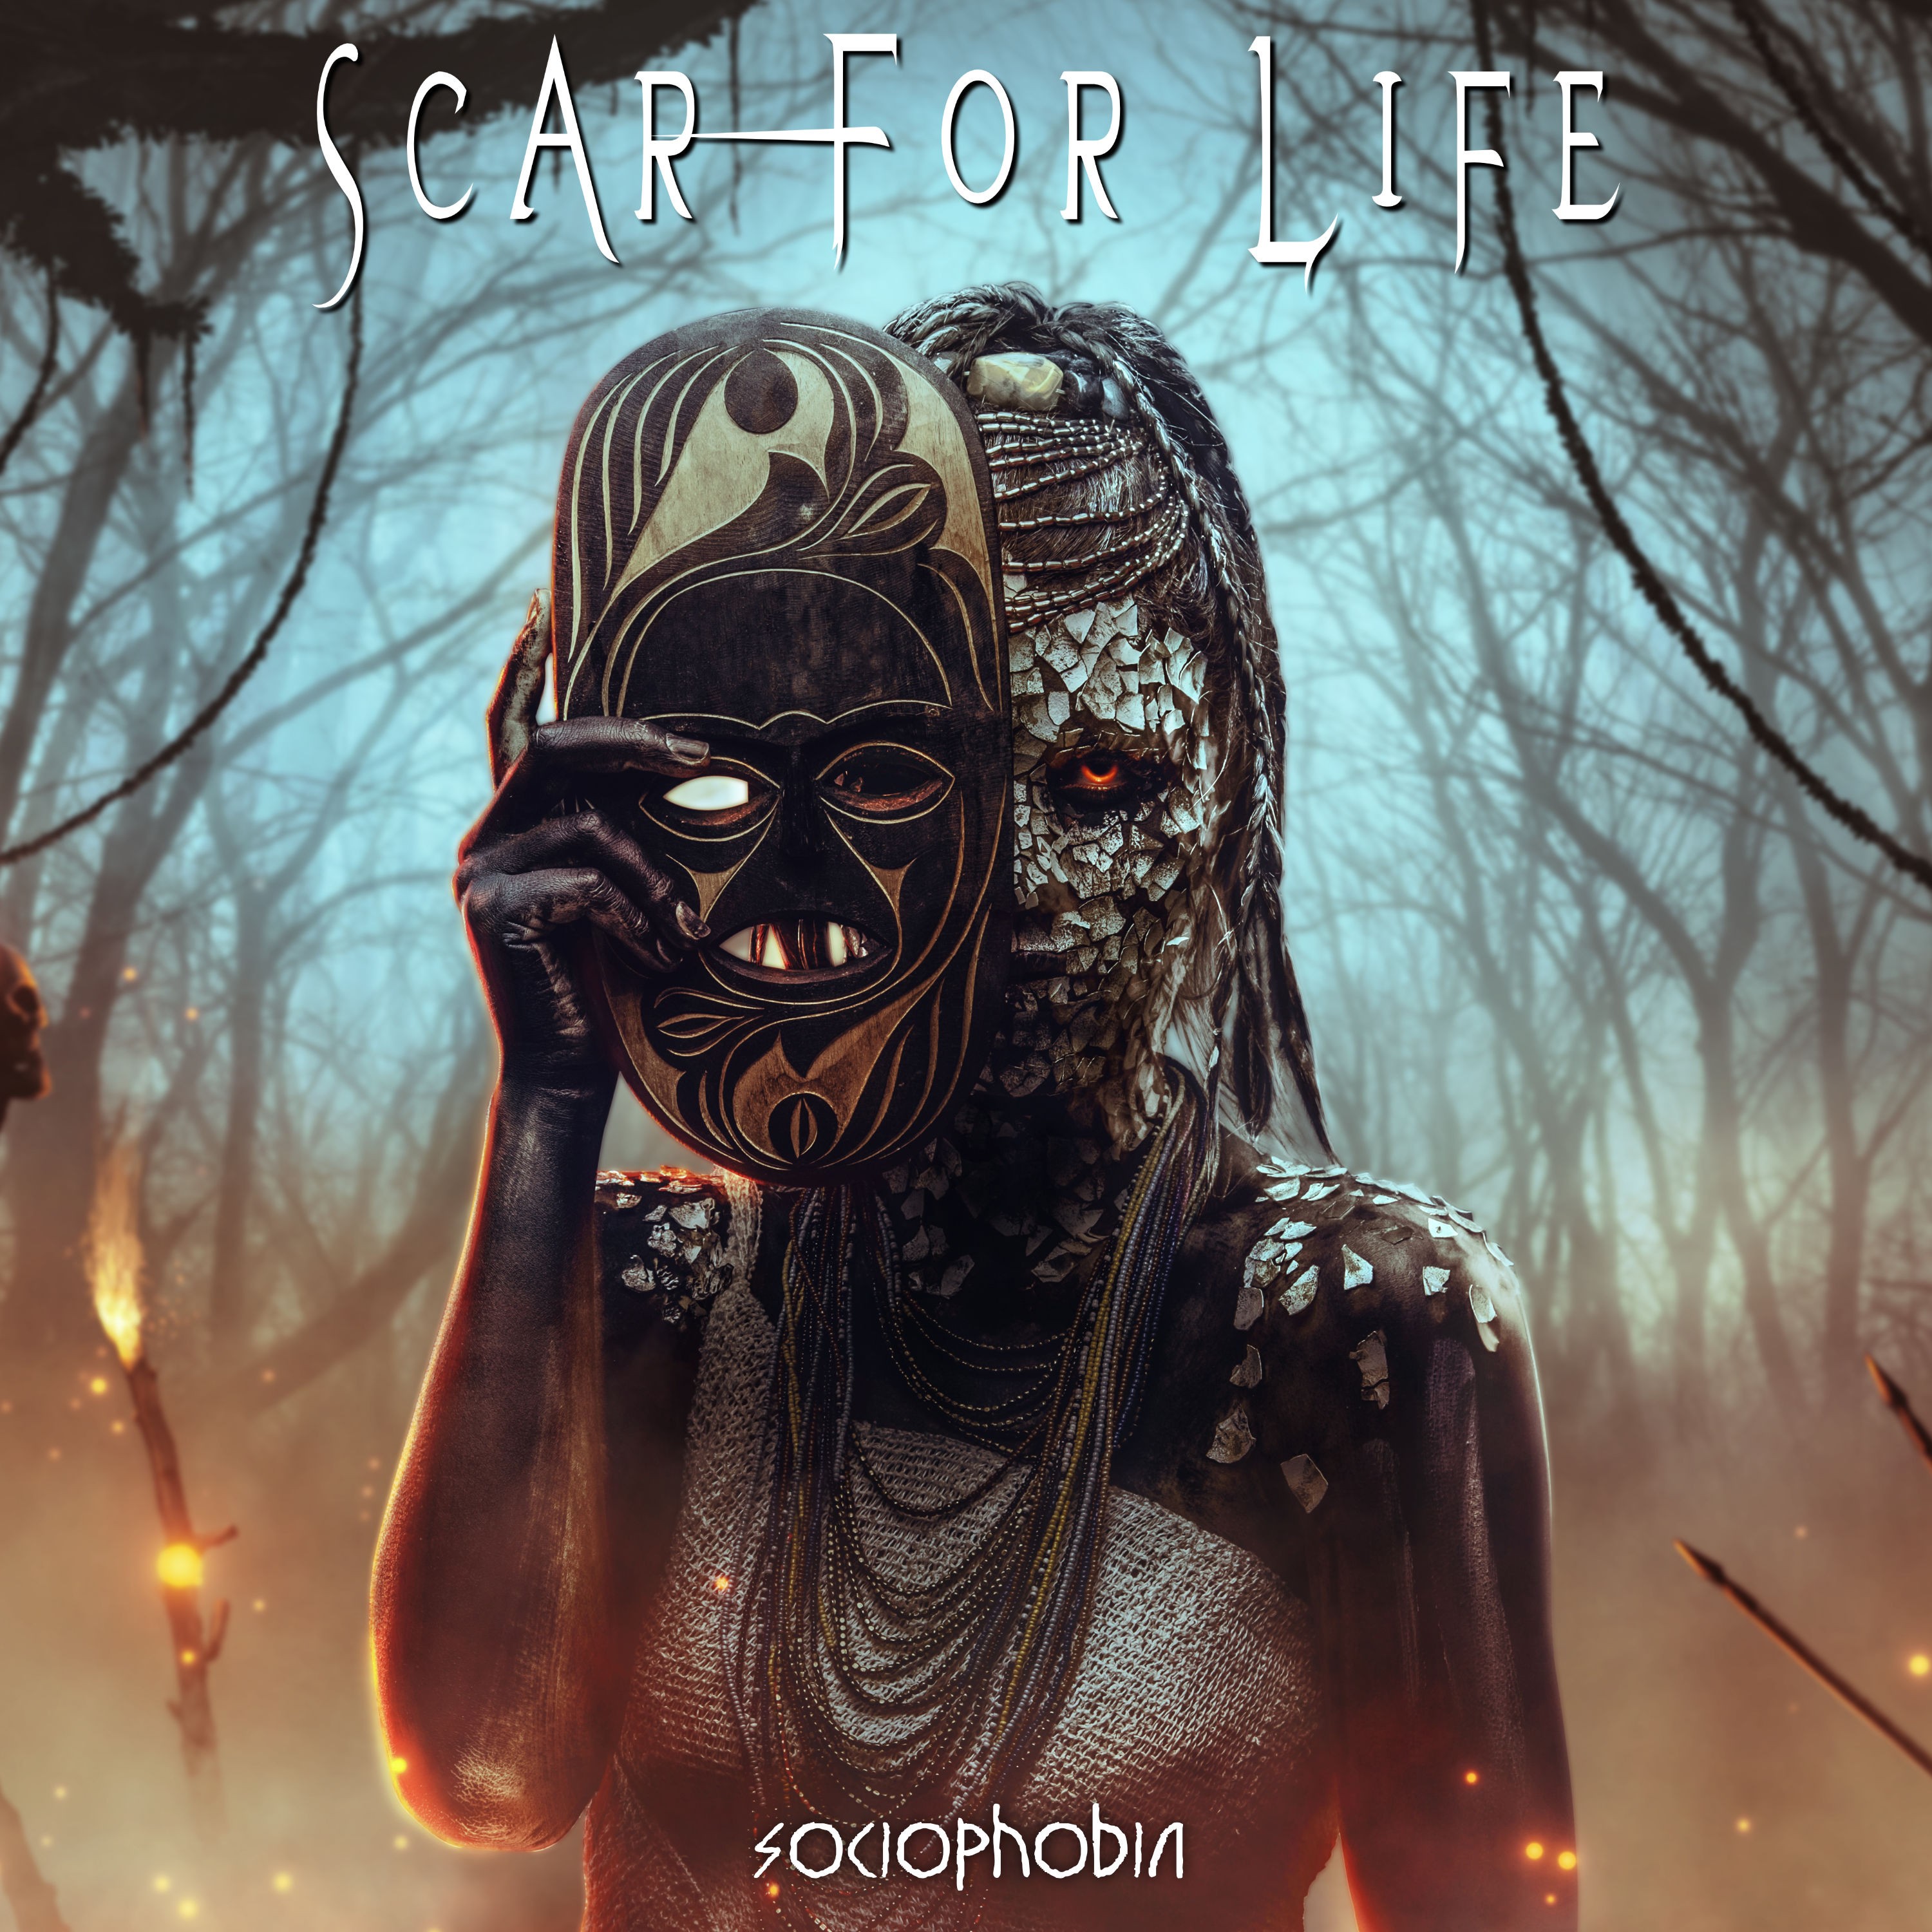 Scar For Life – Sociophobia (2022) MP3 320kbps